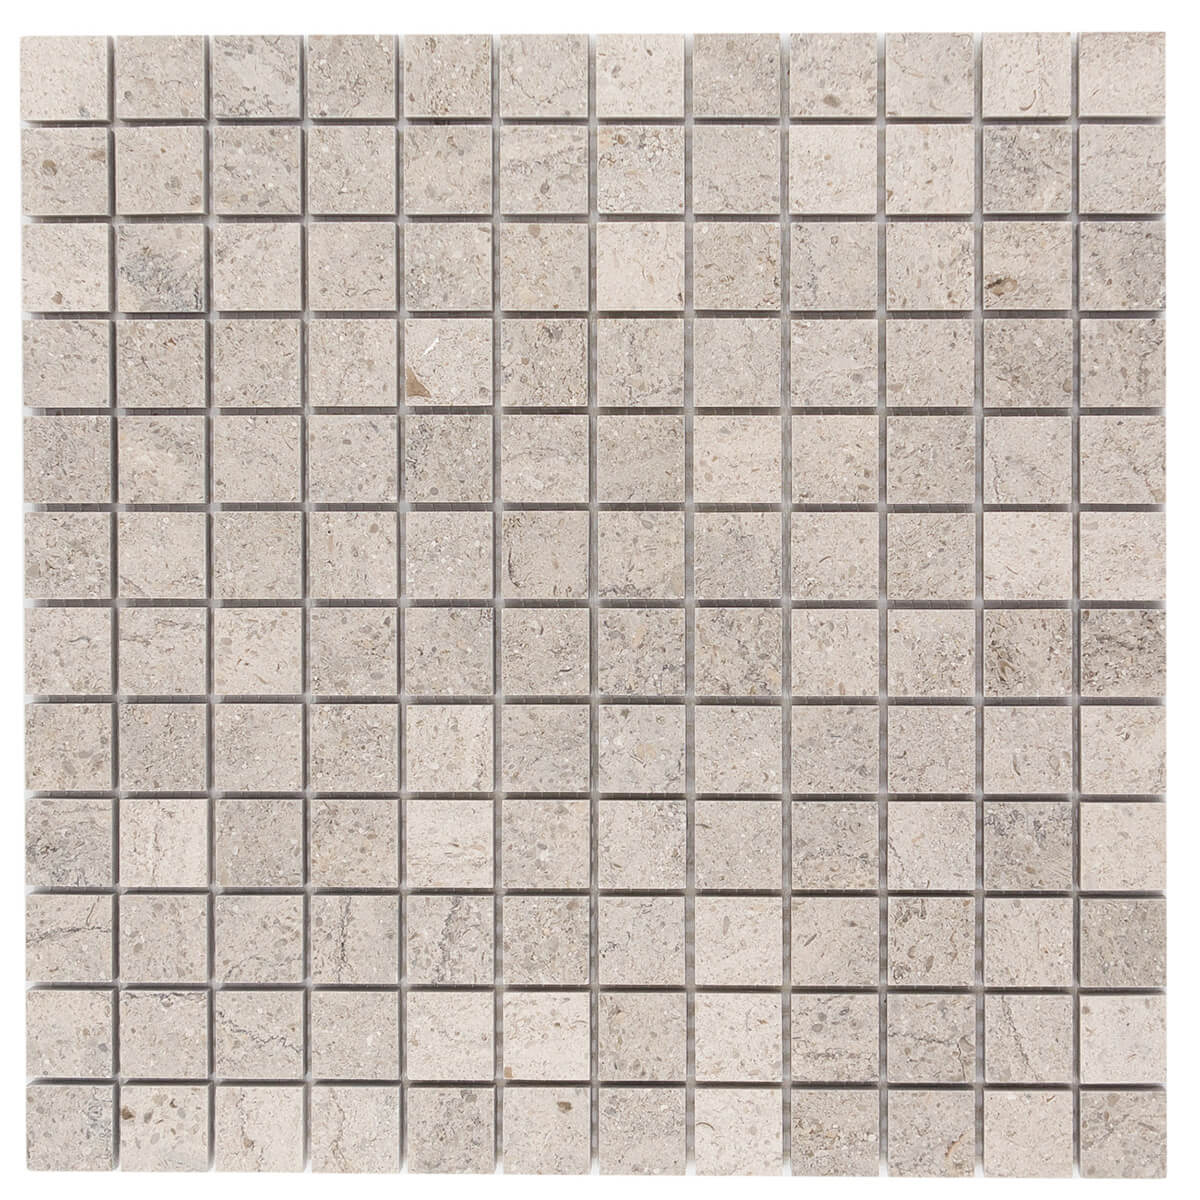 haussmann fontainebleau gascogne blue limestone square mosaic tile 1x1 honed